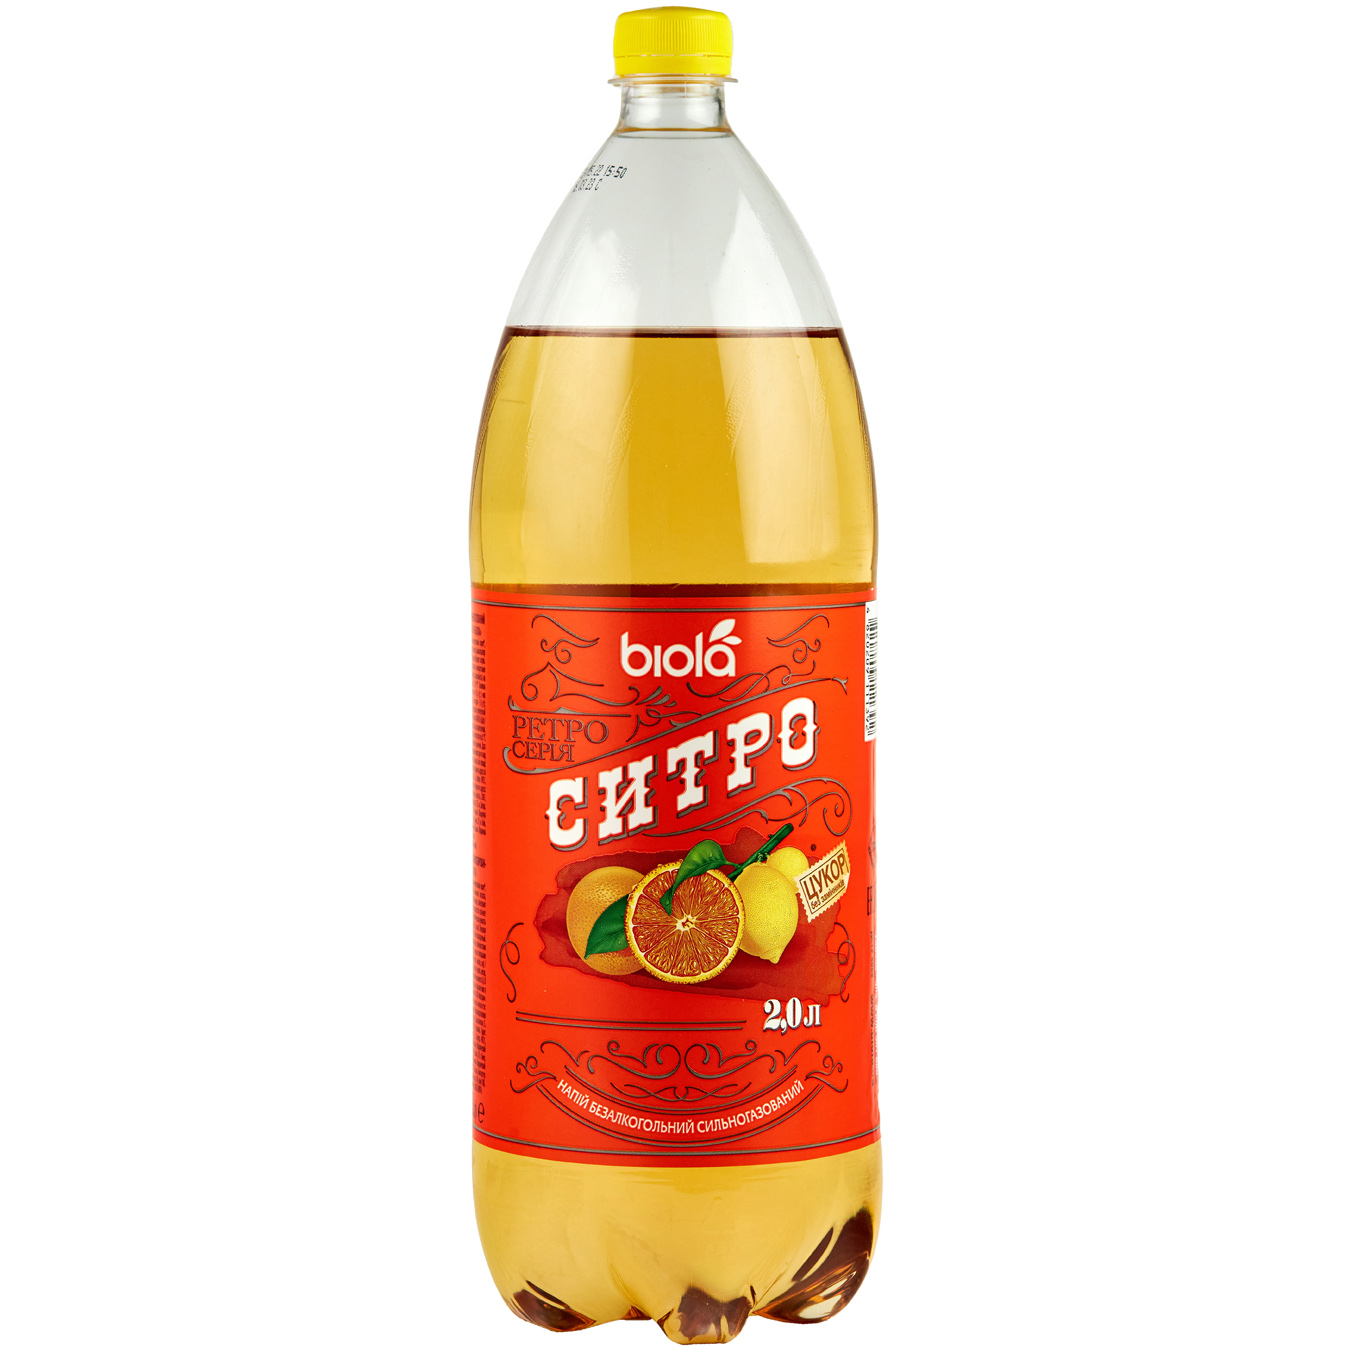 Biola Carbonated drink Citro 2 l